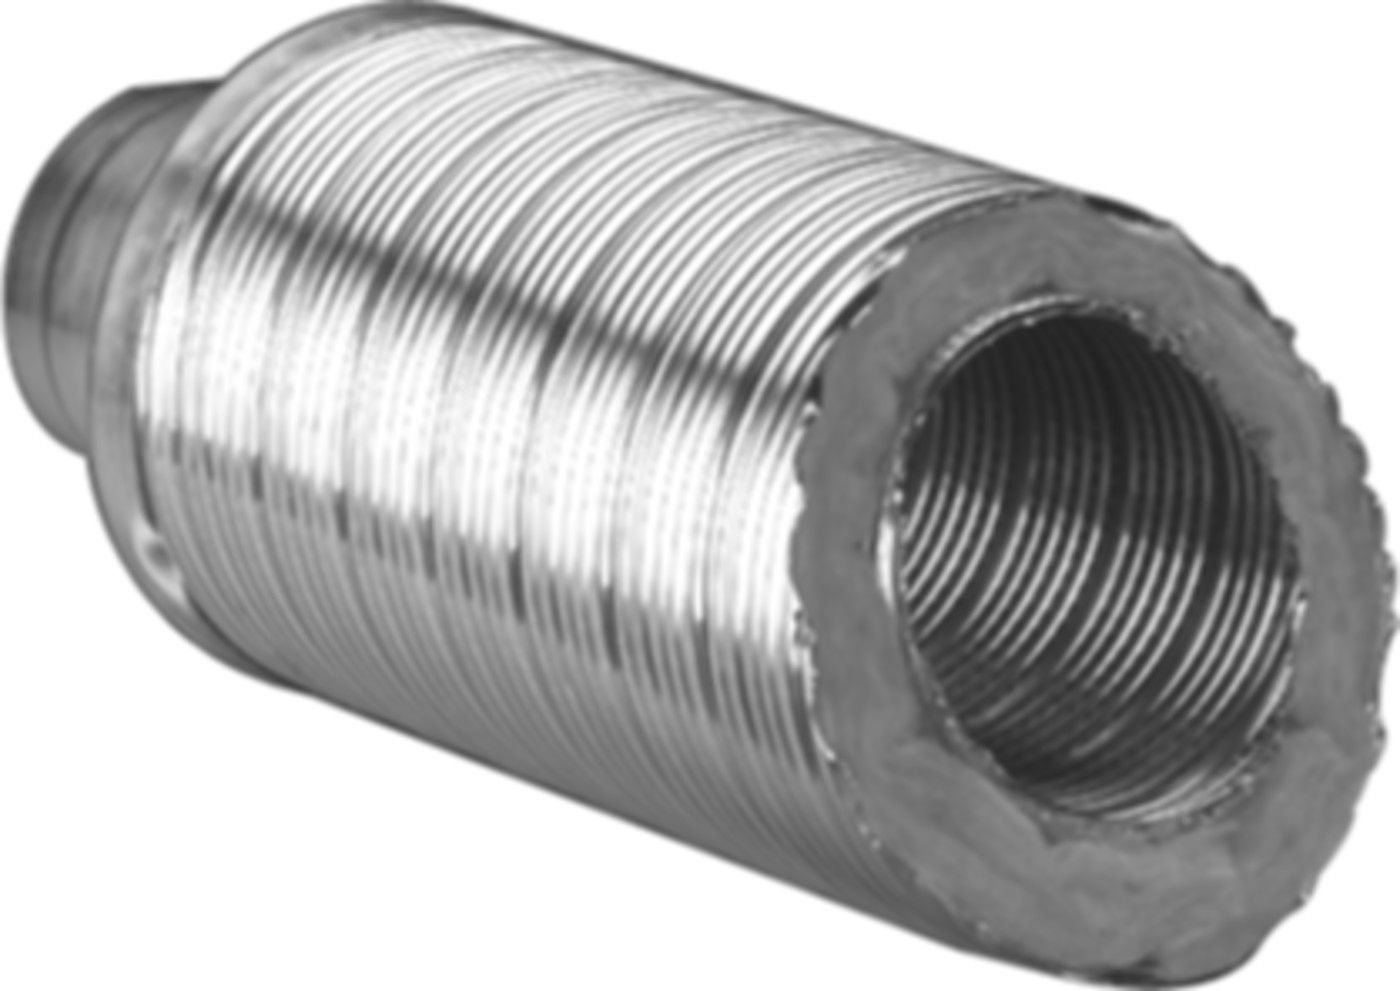 Telefonie-Schalldämpfer TSD 30 125/187 m/Glasfaserisolierung 30 mm, Länge 1 m - Flexible Lüftungsschläuche